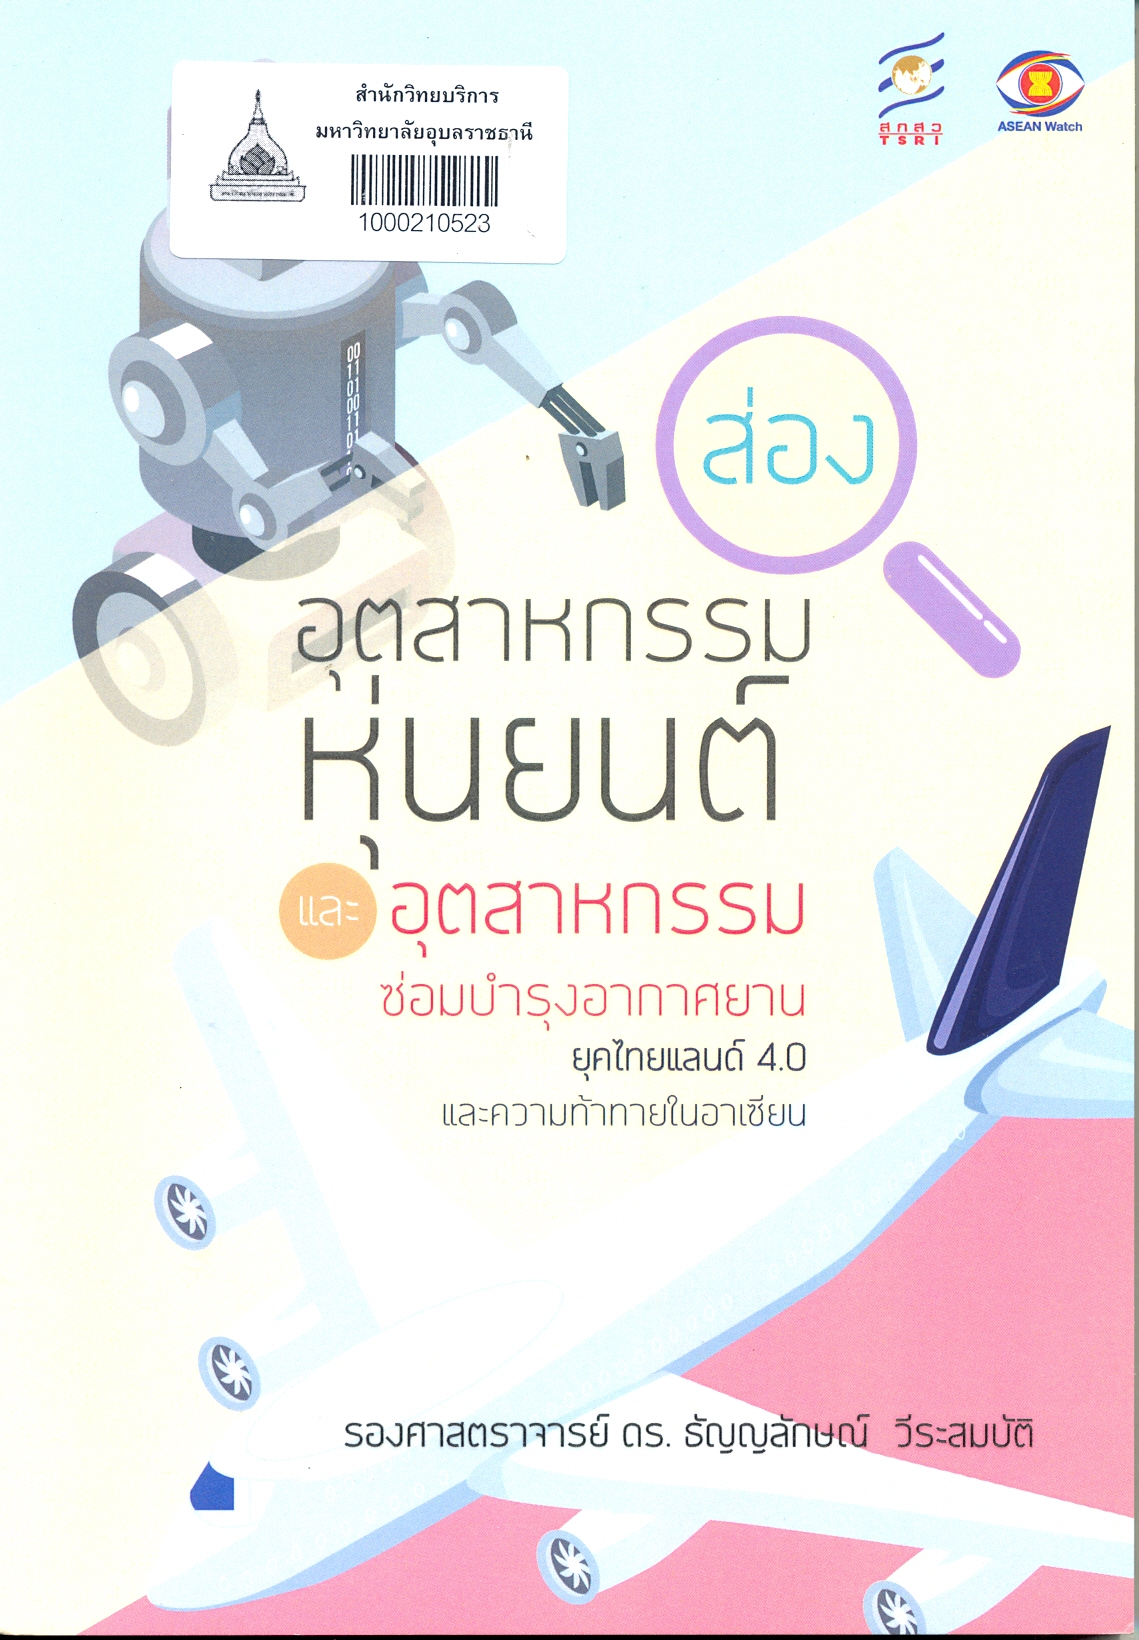 ส่อง -- อุตสาหกรรมหุ่นยนต์และอุตสาหกรรมซ่อมบำรุงอากาศยาน ยุคไทยแลนด์ 4.0 และความท้าทายในอาเซียน 